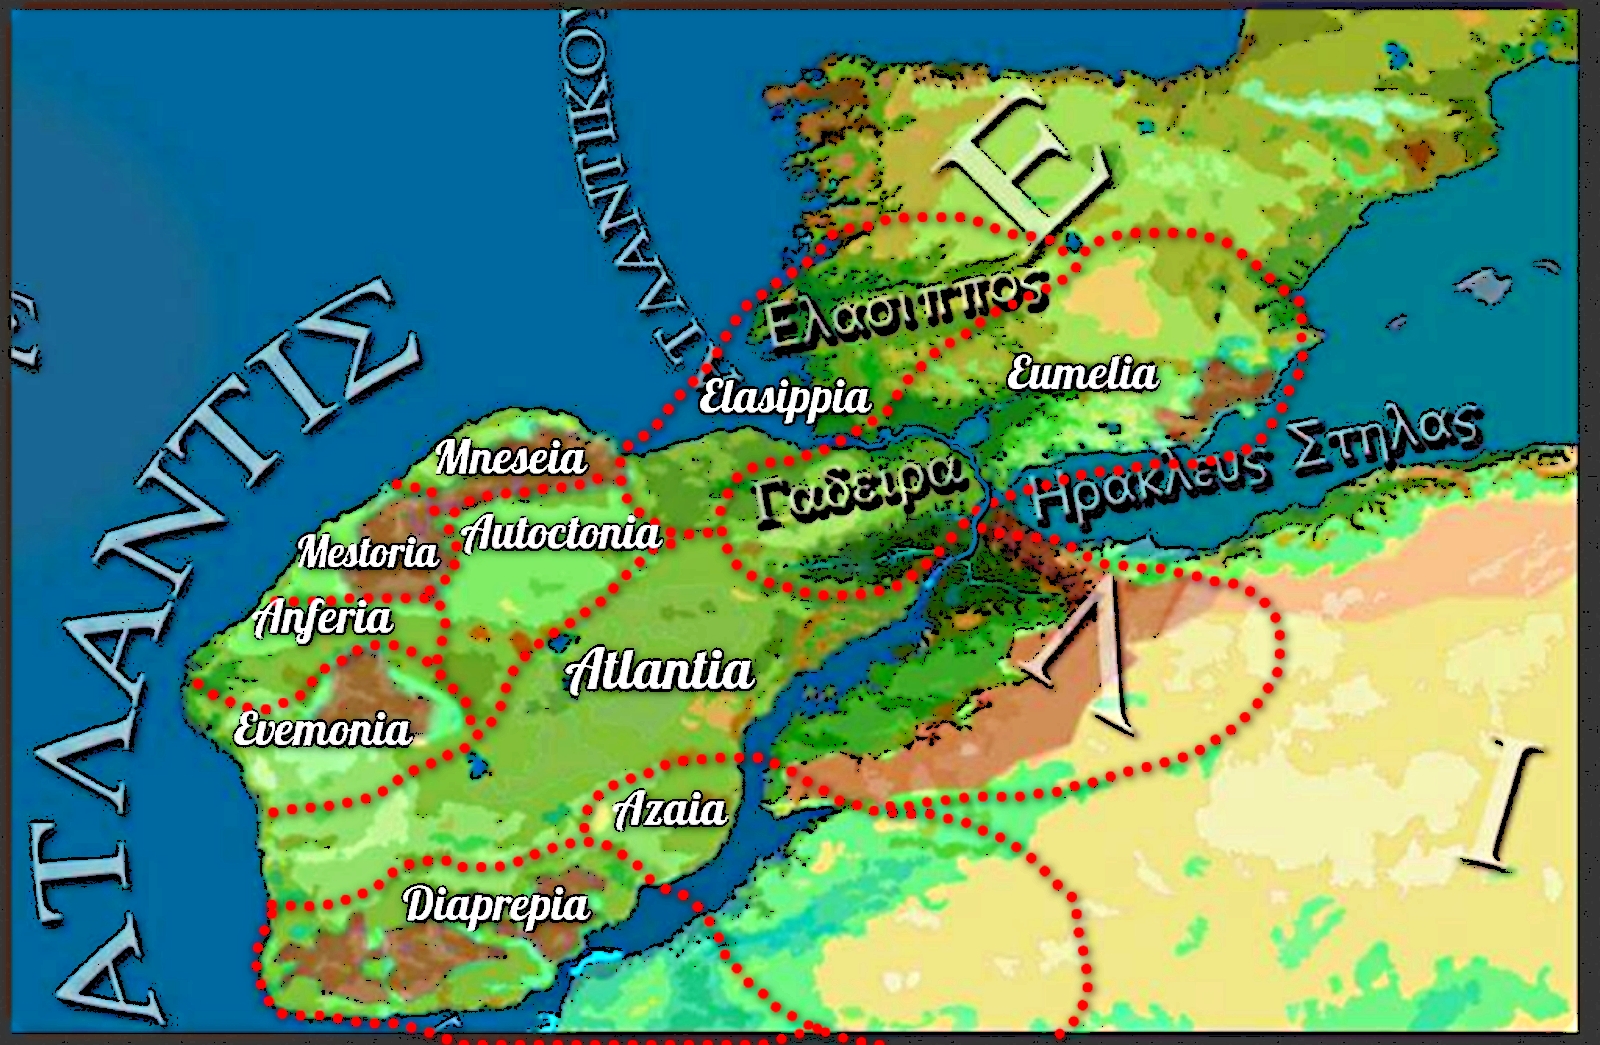 Reinos de la Isla Atlántida de Platón – Reconstrucción Paleogeográfica. Extensión máxima y ubicación hipotética basada en las fuentes textuales.